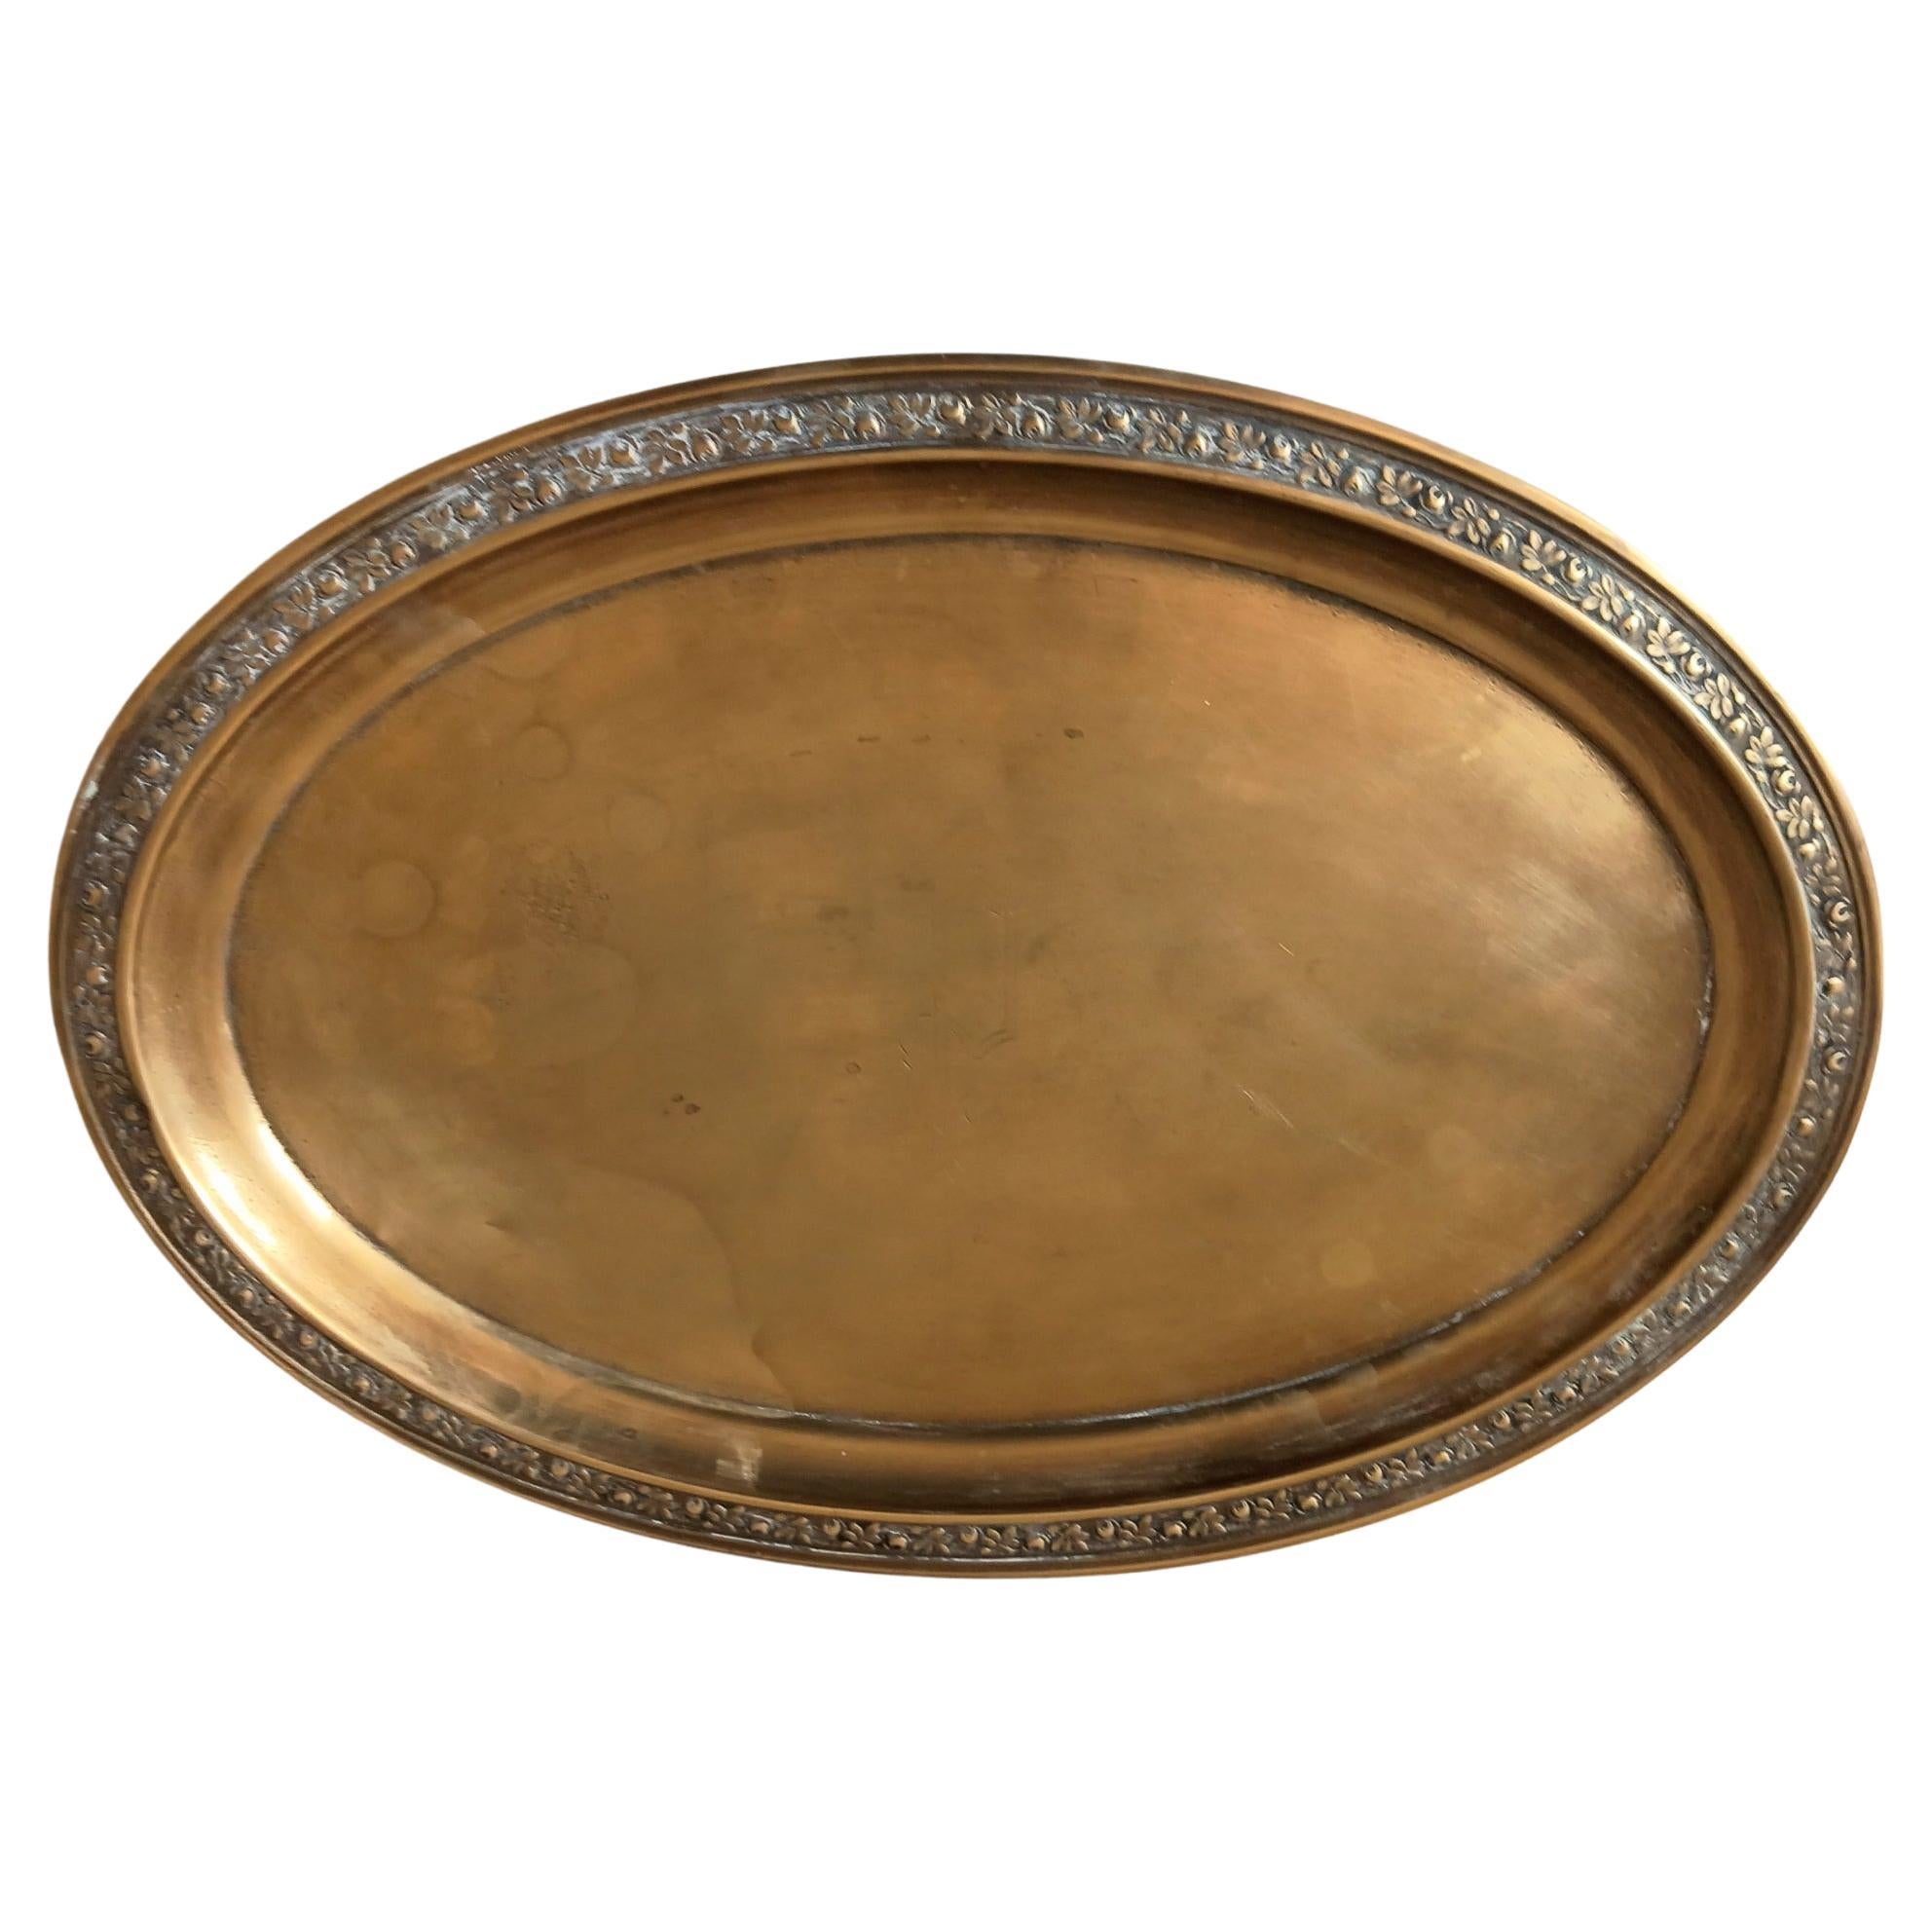 Tablett aus Bronze, oval, viktorianisch, mit dekorativem Lateral-Feston